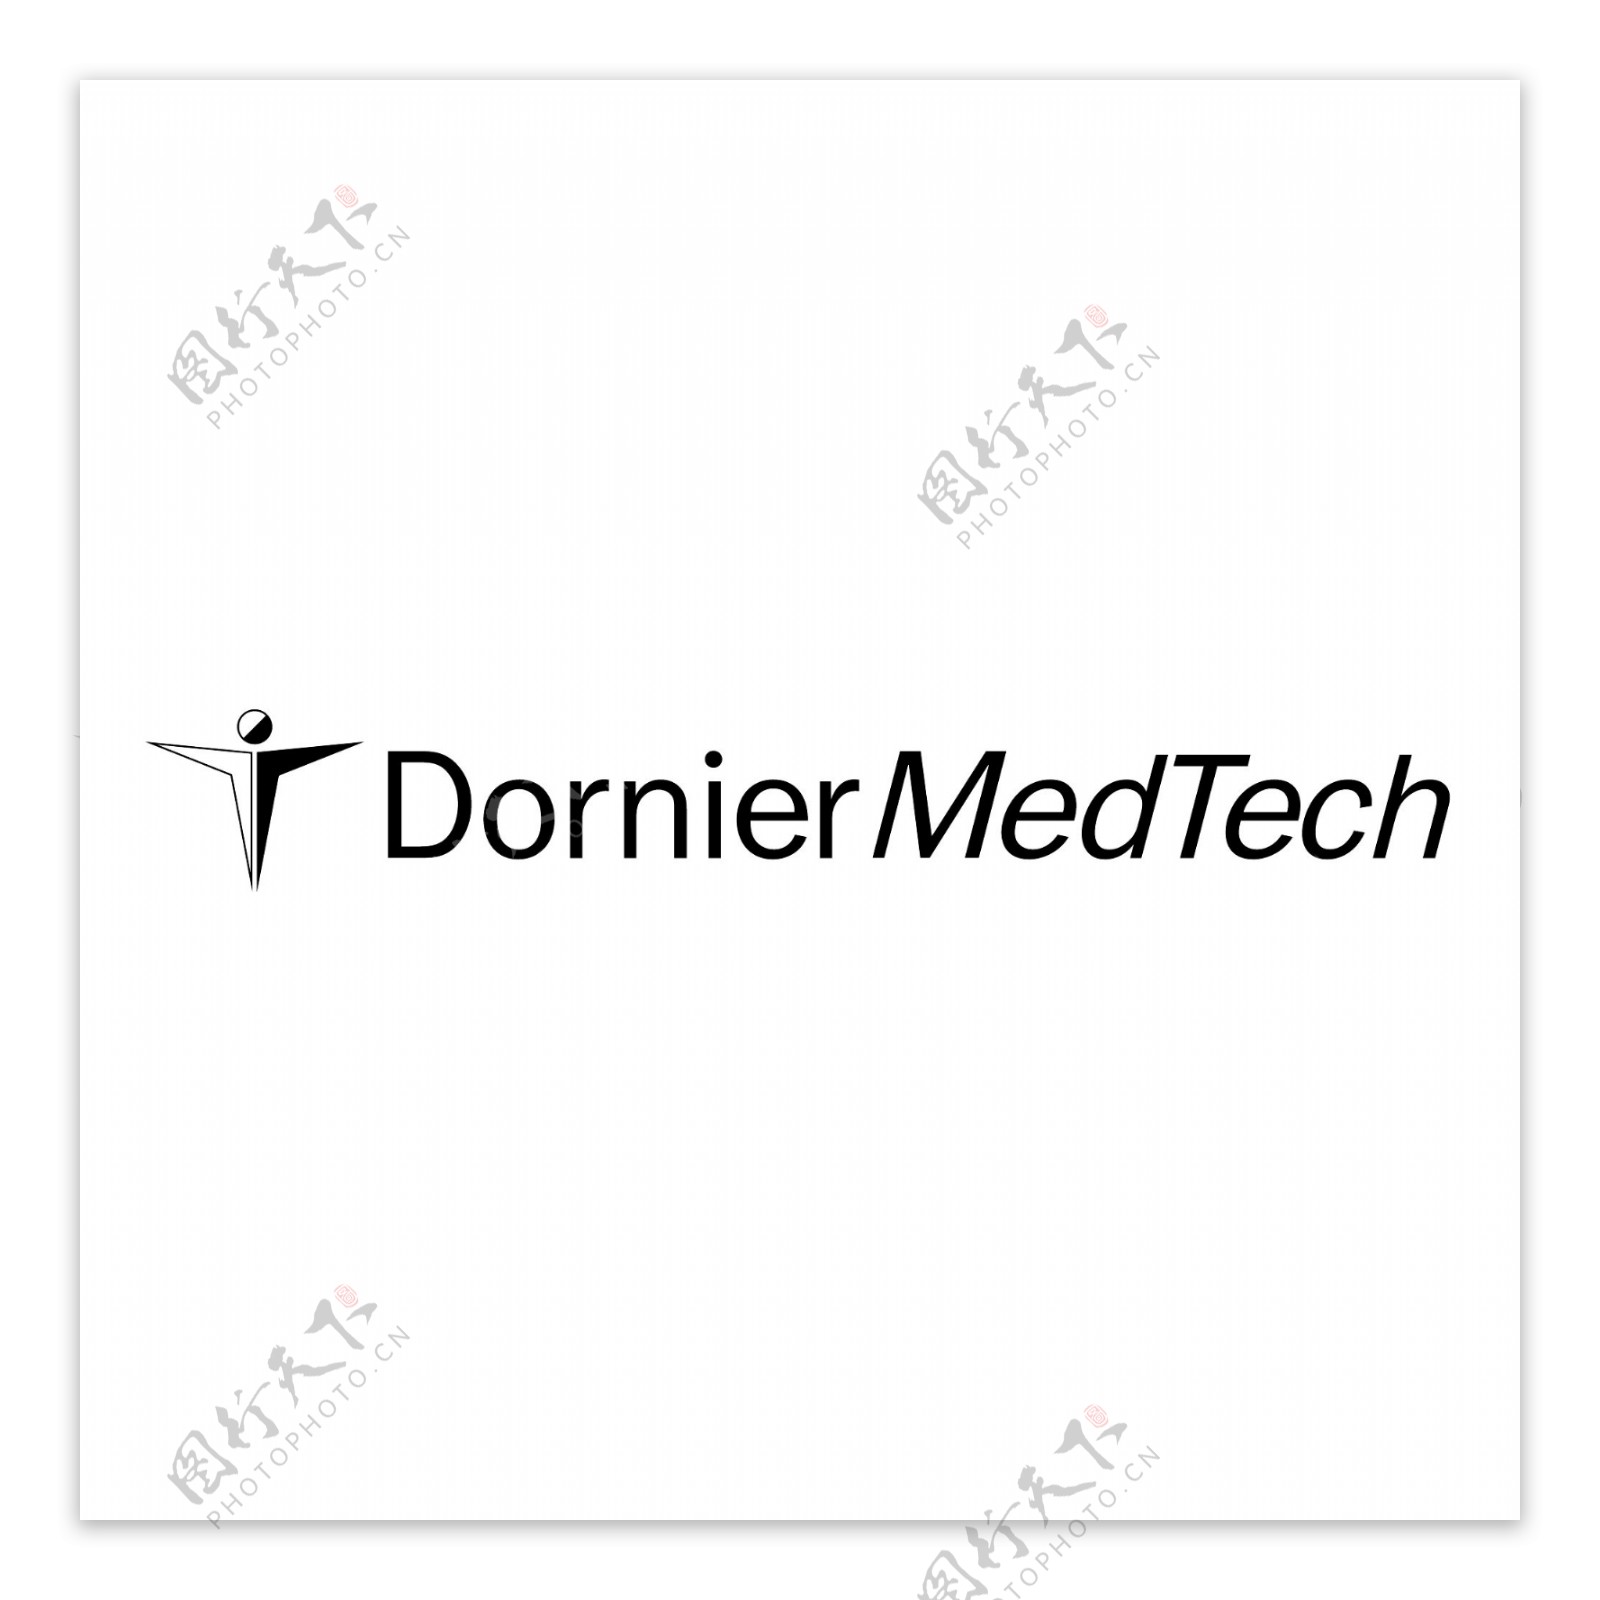 多尼尔医疗技术